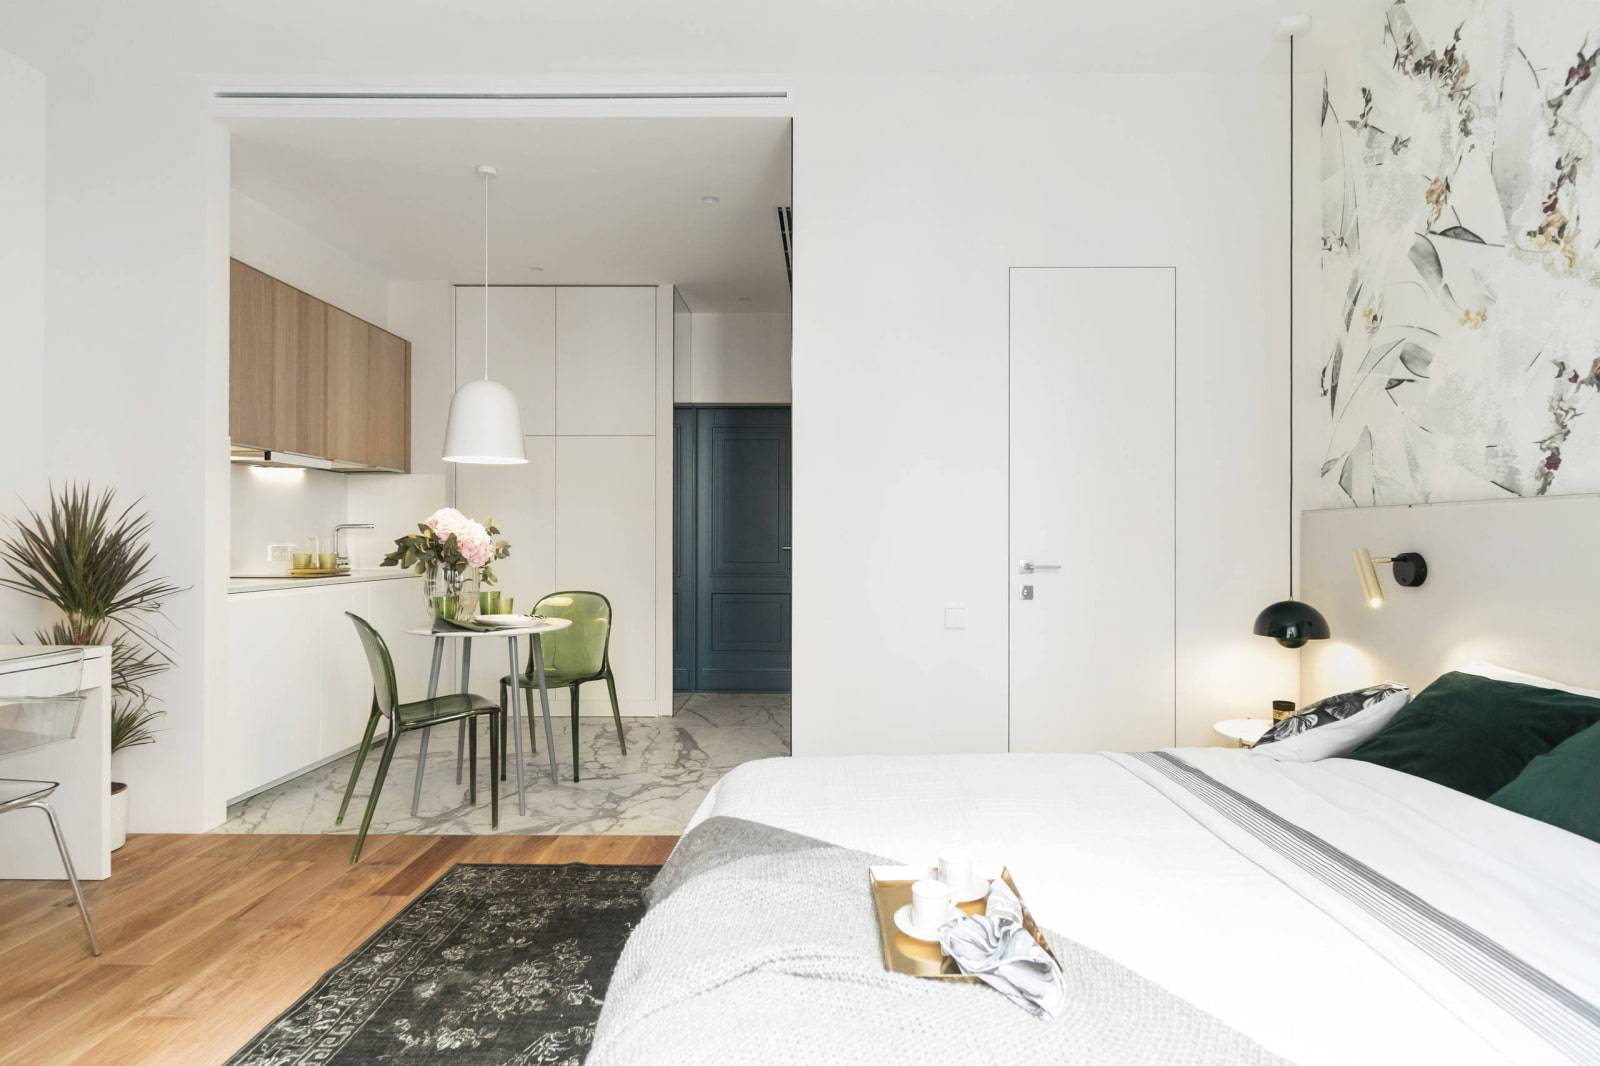 Дизайн квартиры-студии 25 кв. м (135 фото): интерьер с балконом, выбираем мебель для маленькой комнаты с одним окном и двумя